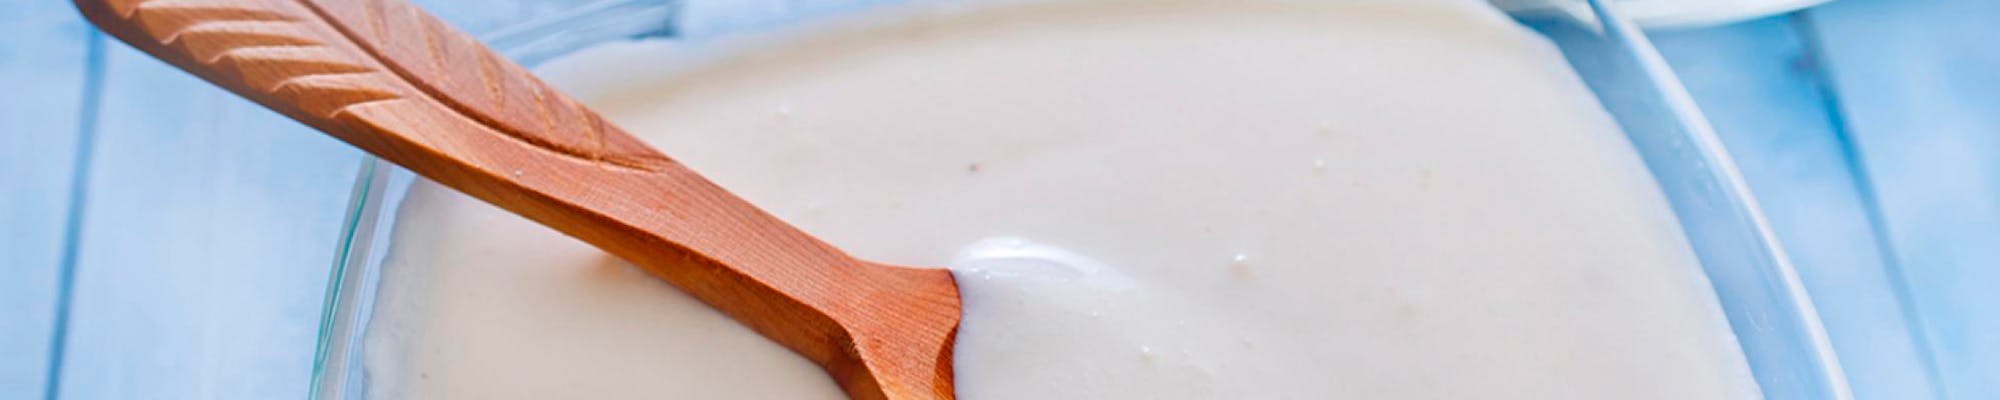   Syrnet melk i en skål, med en tresleiv oppi (avlangt)